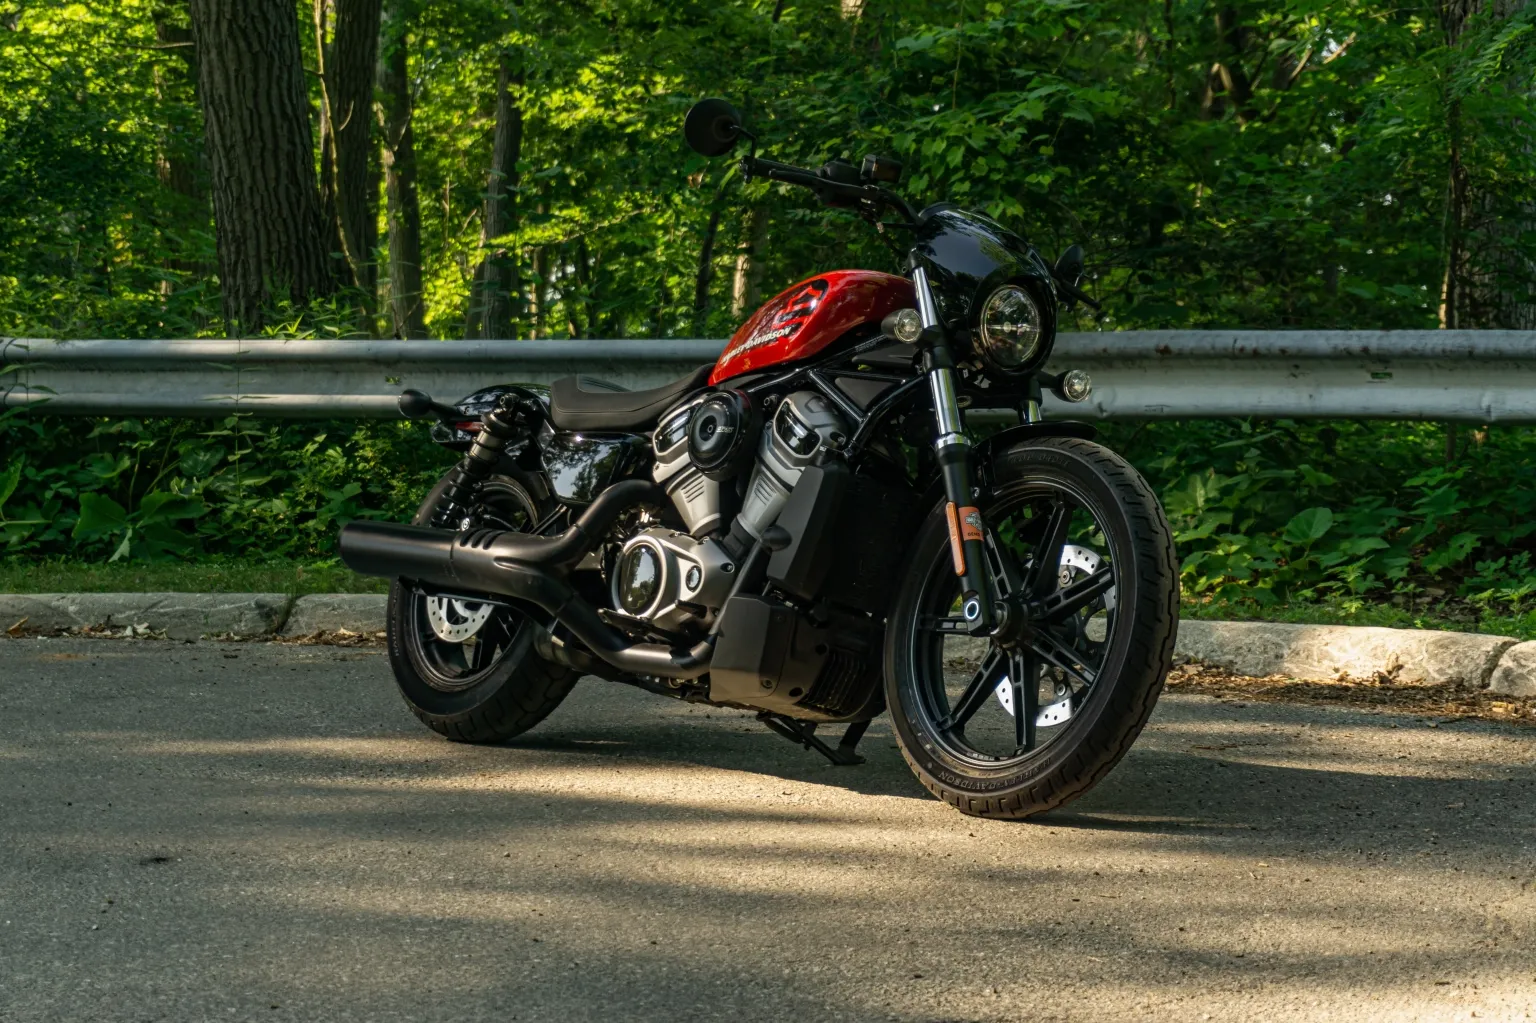 2022 Harley Davidson nightster